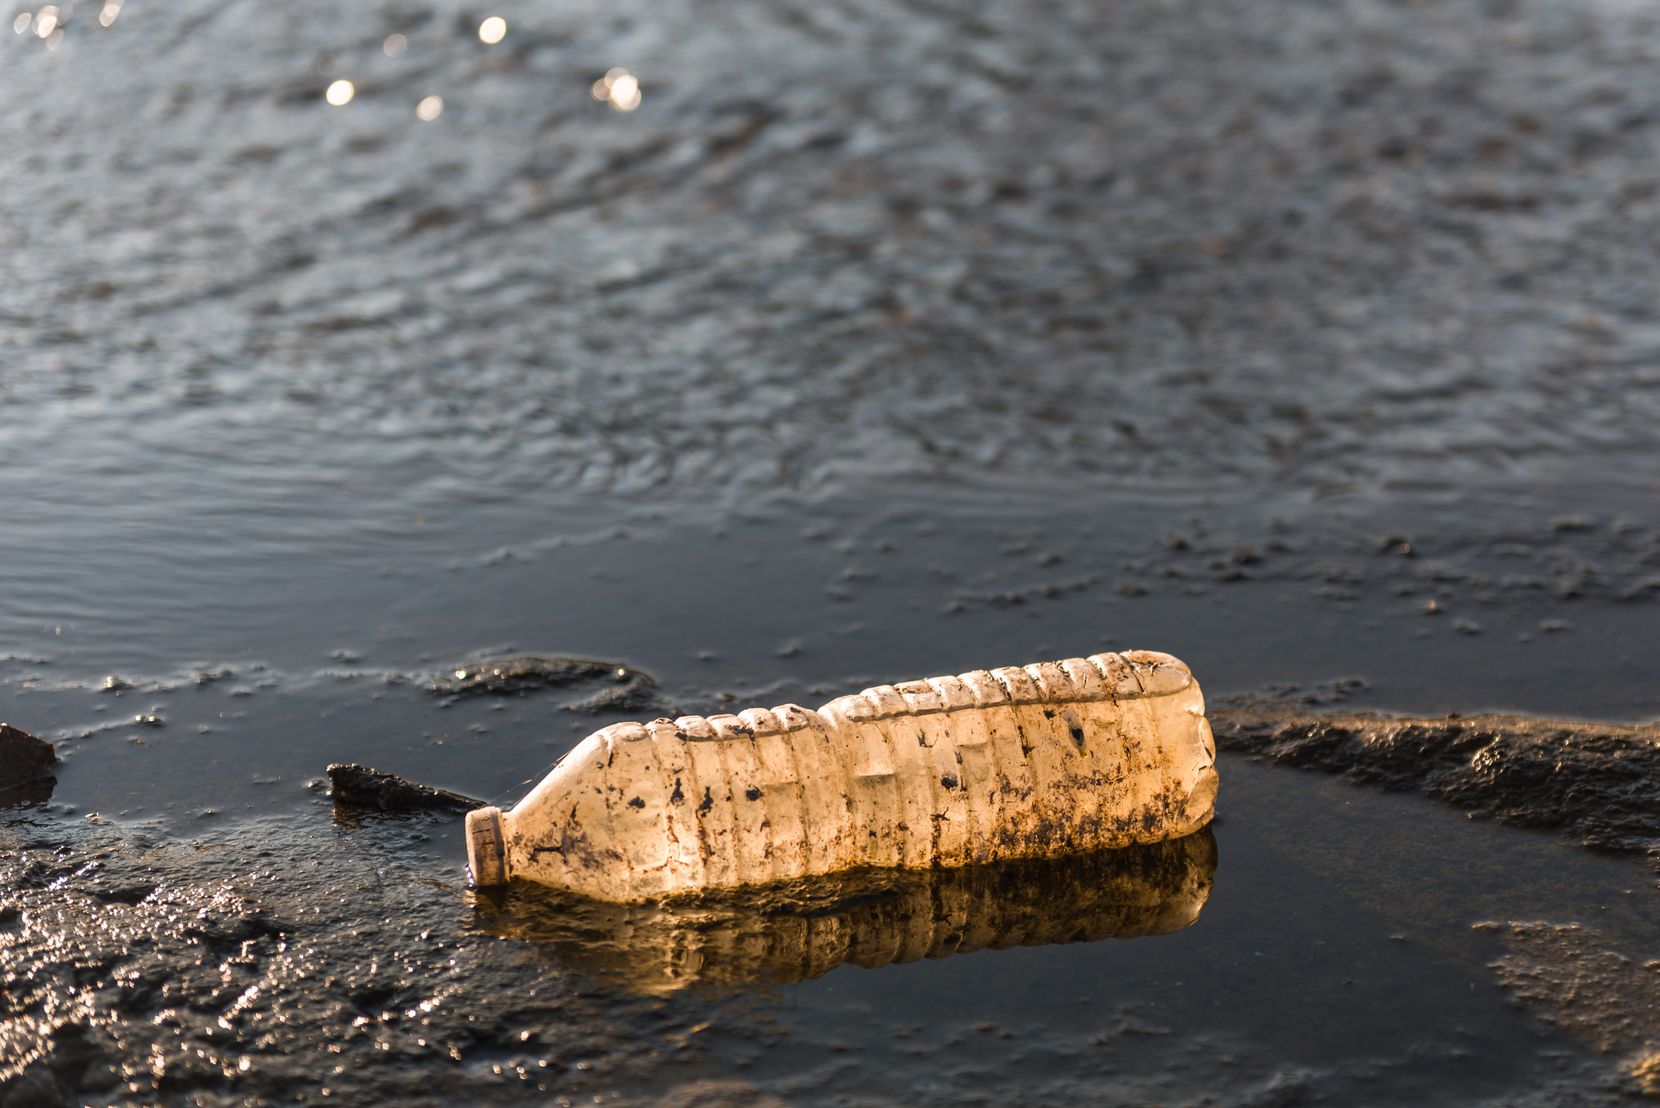 Auf dem Bild ist eine Plastik Wasserflasche am Strand zu sehen.